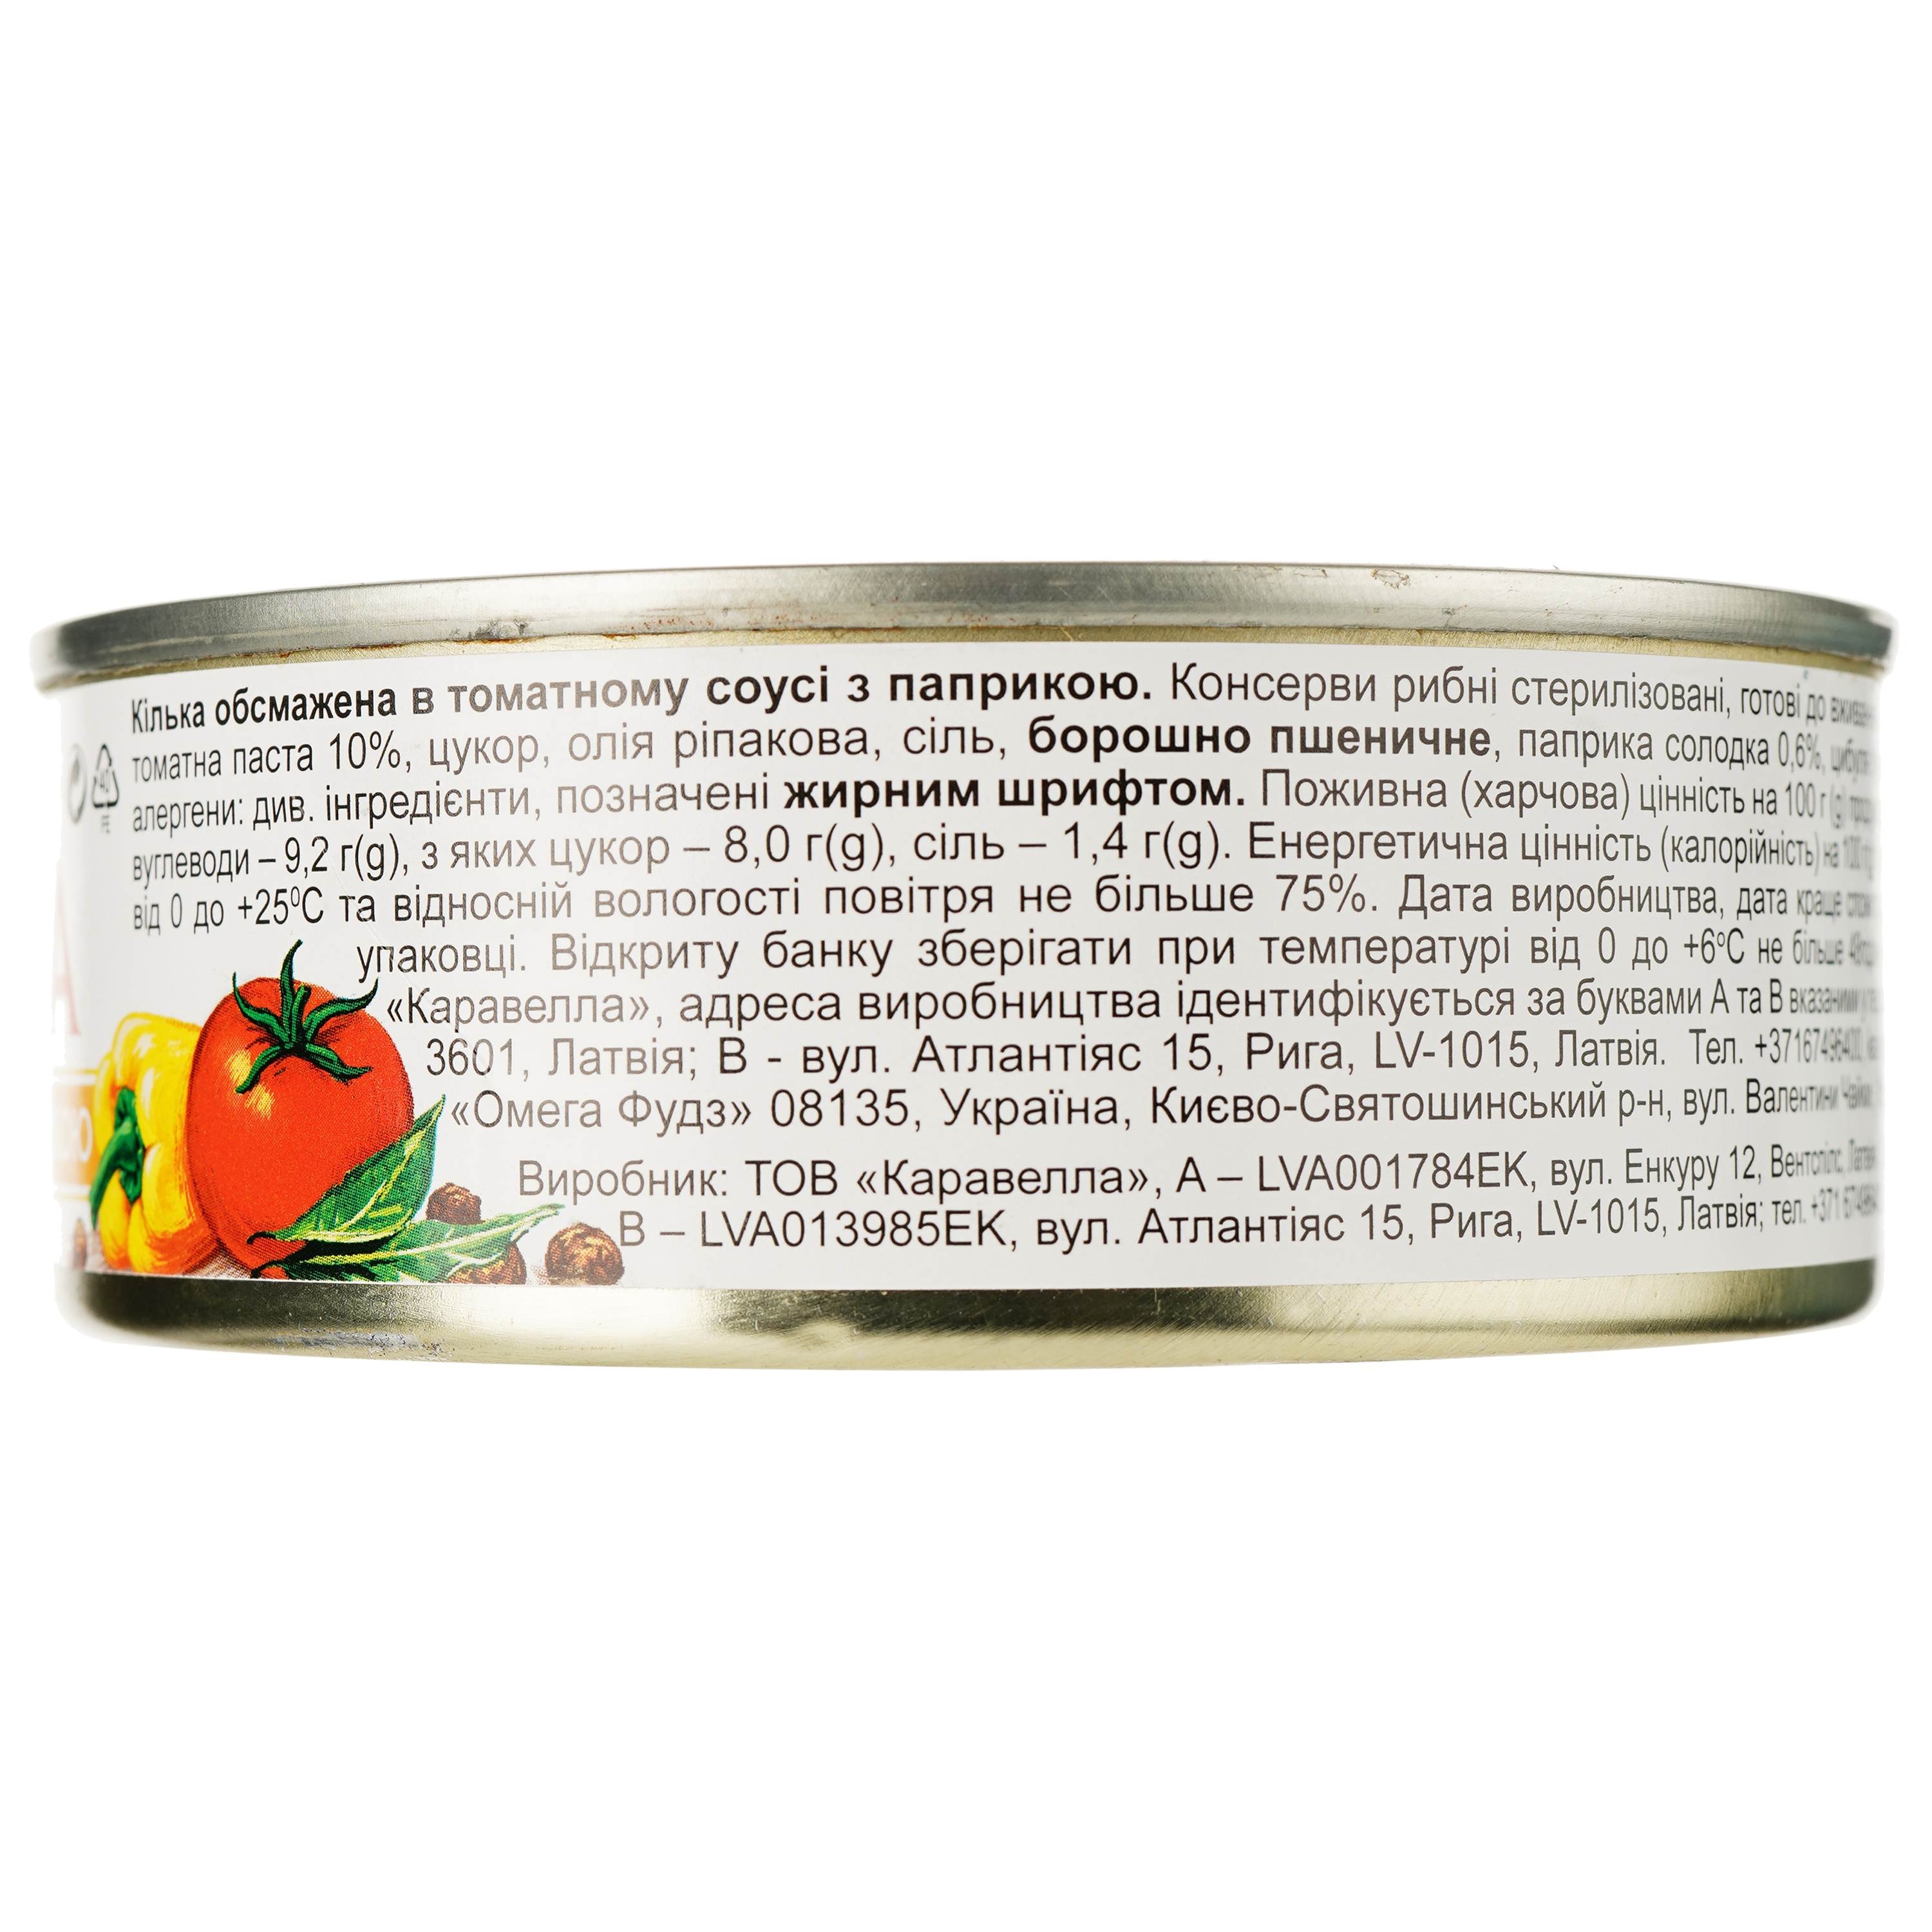 Килька Kaija обжаренная в томатном соусе с паприкой 240 г (879560) - фото 2